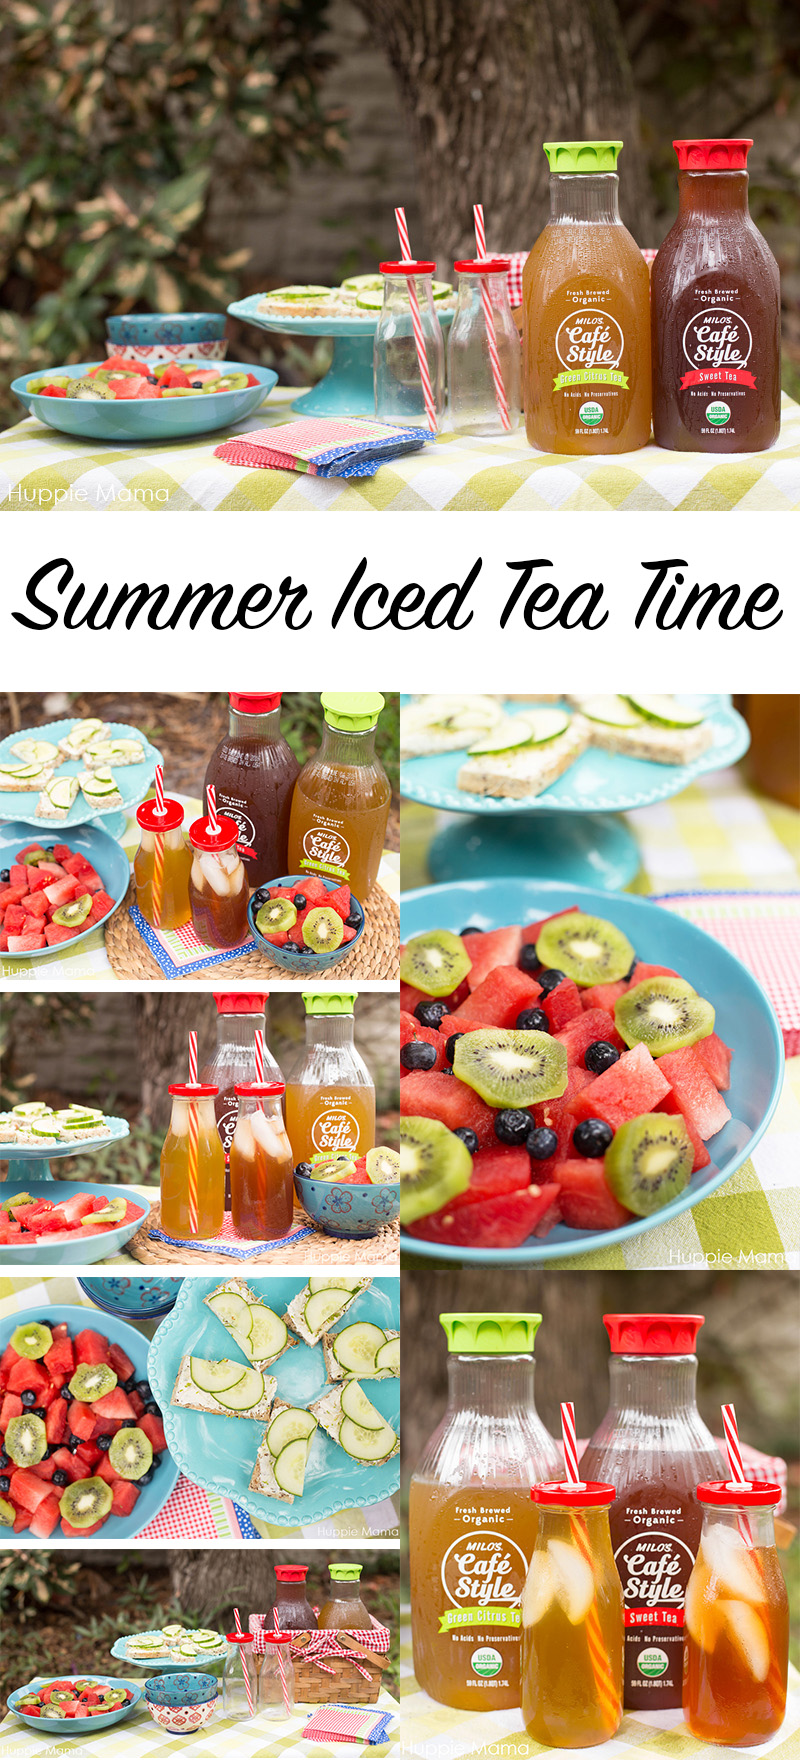 Summer Iced Tea Time